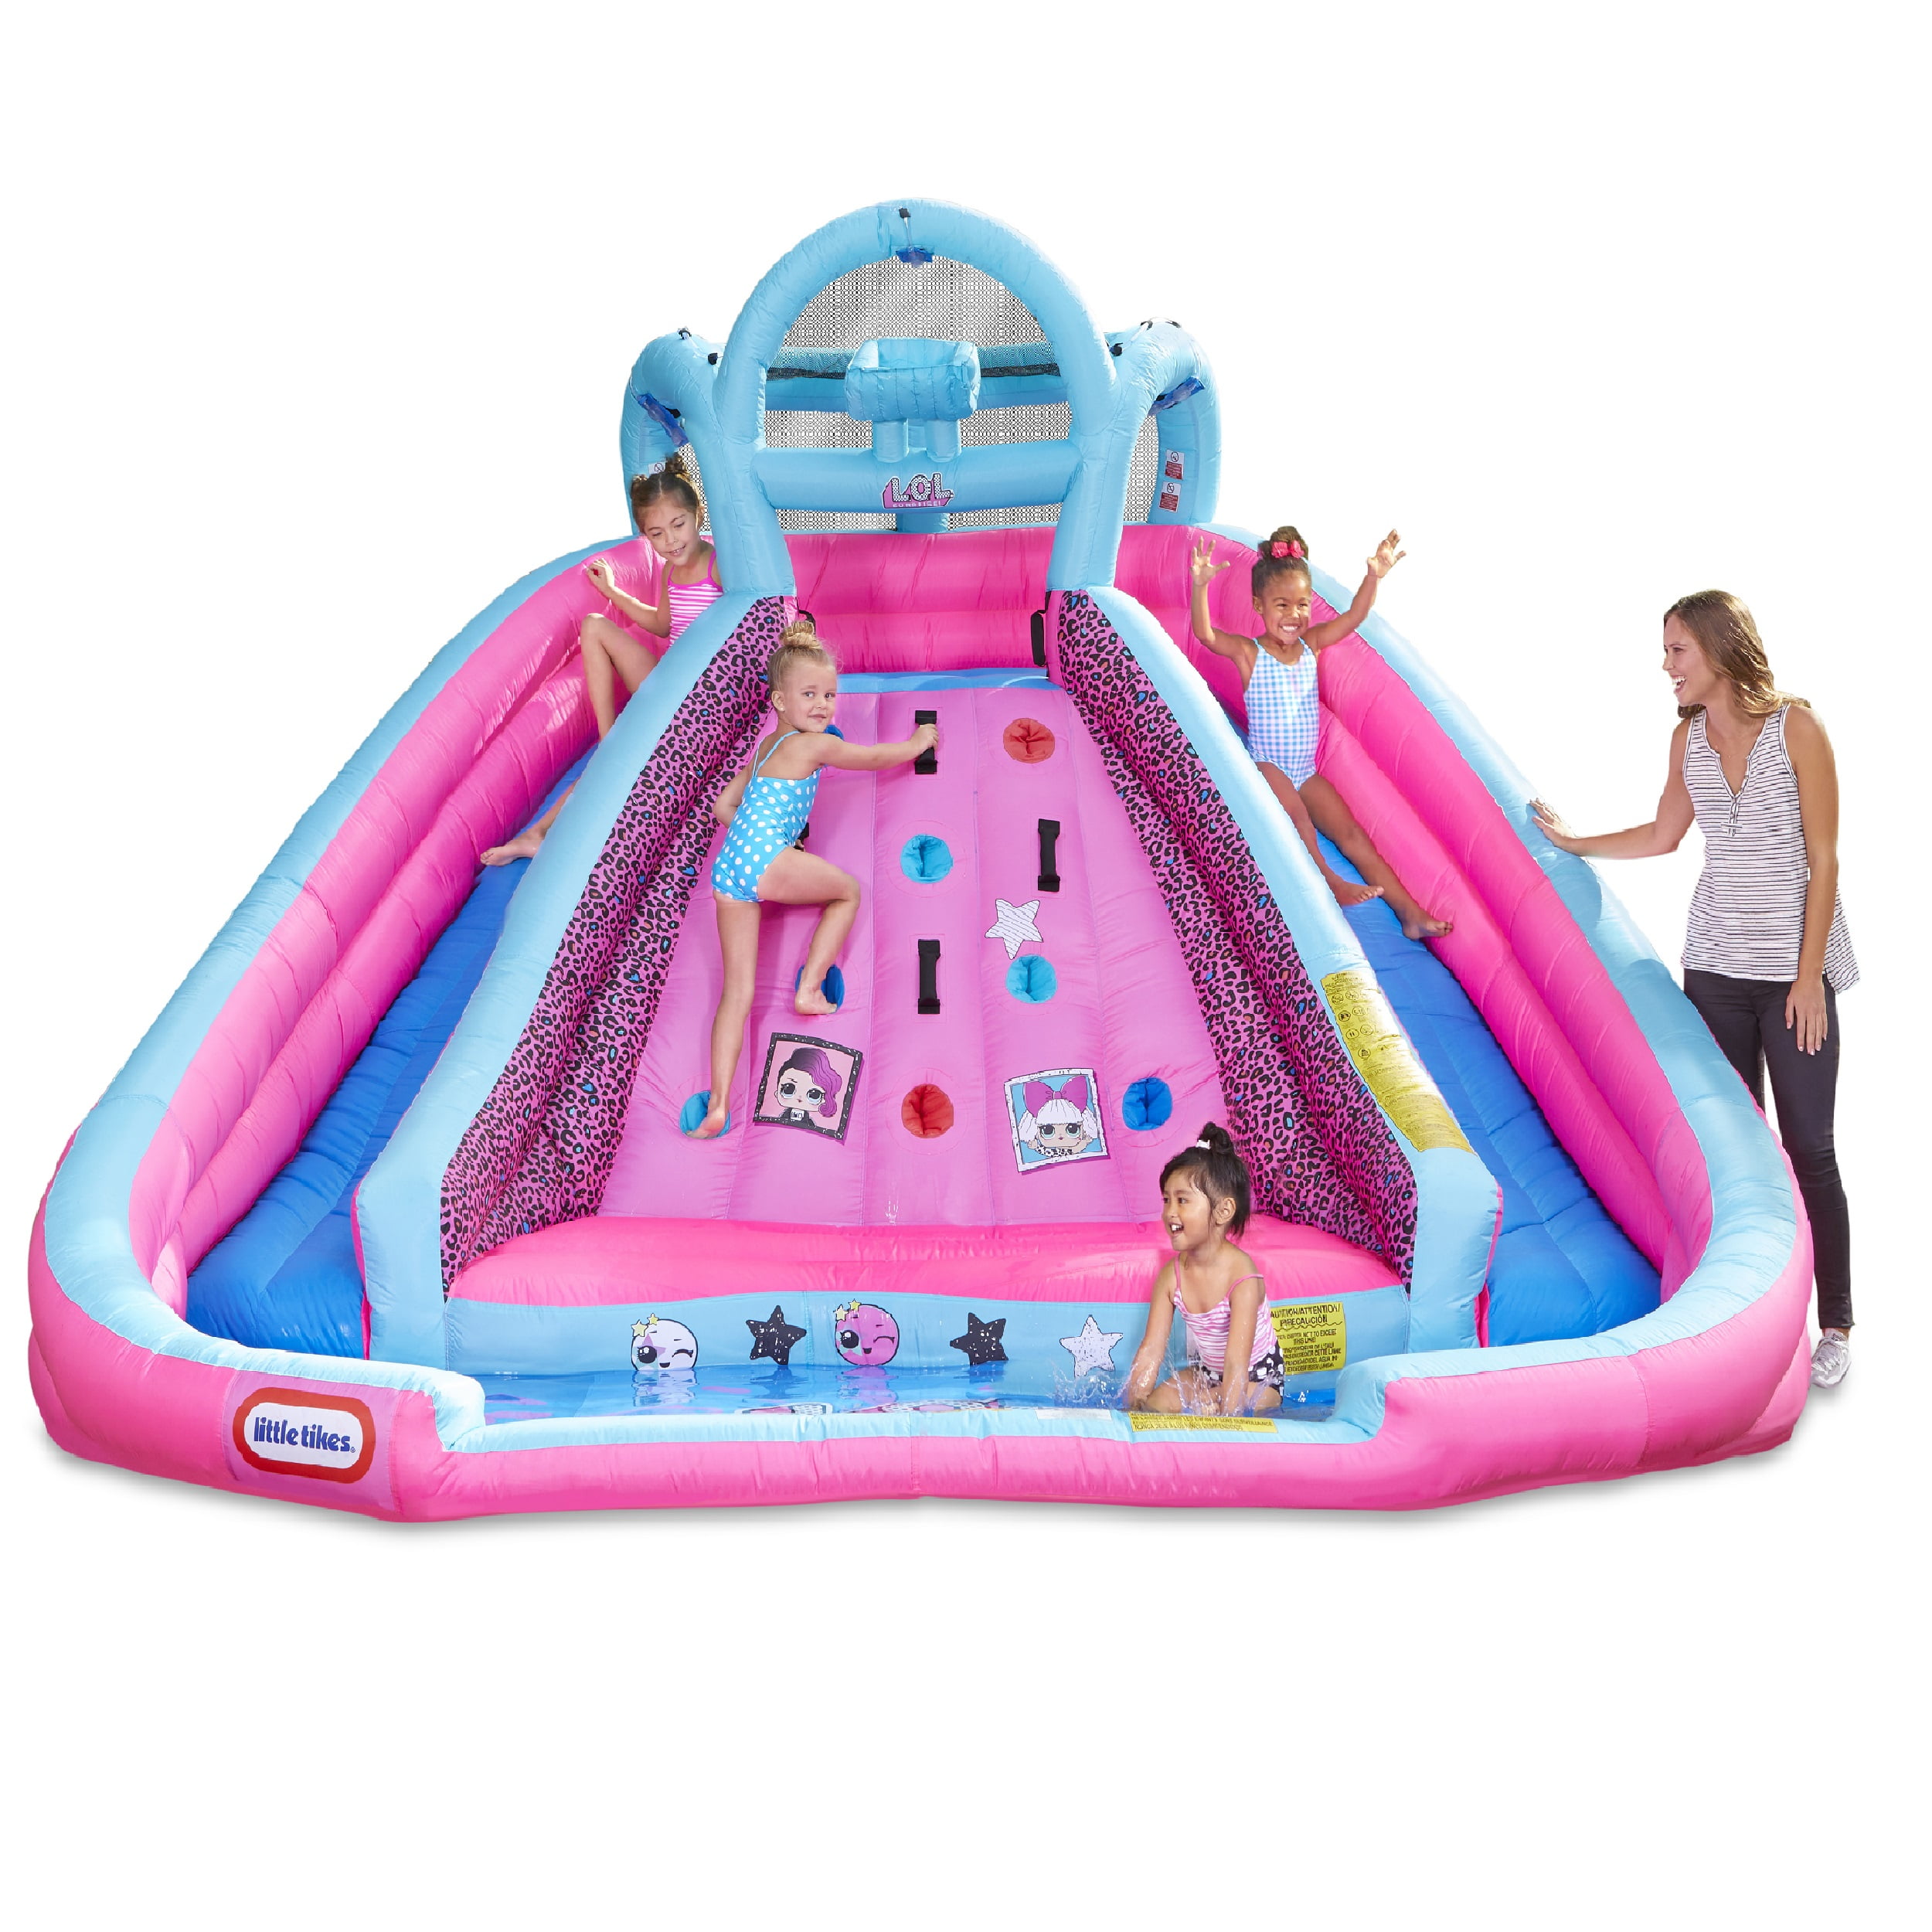 Горки шарики бассейн. Little Tikes Inflatable Water Slide. Барби батут Барби батут.